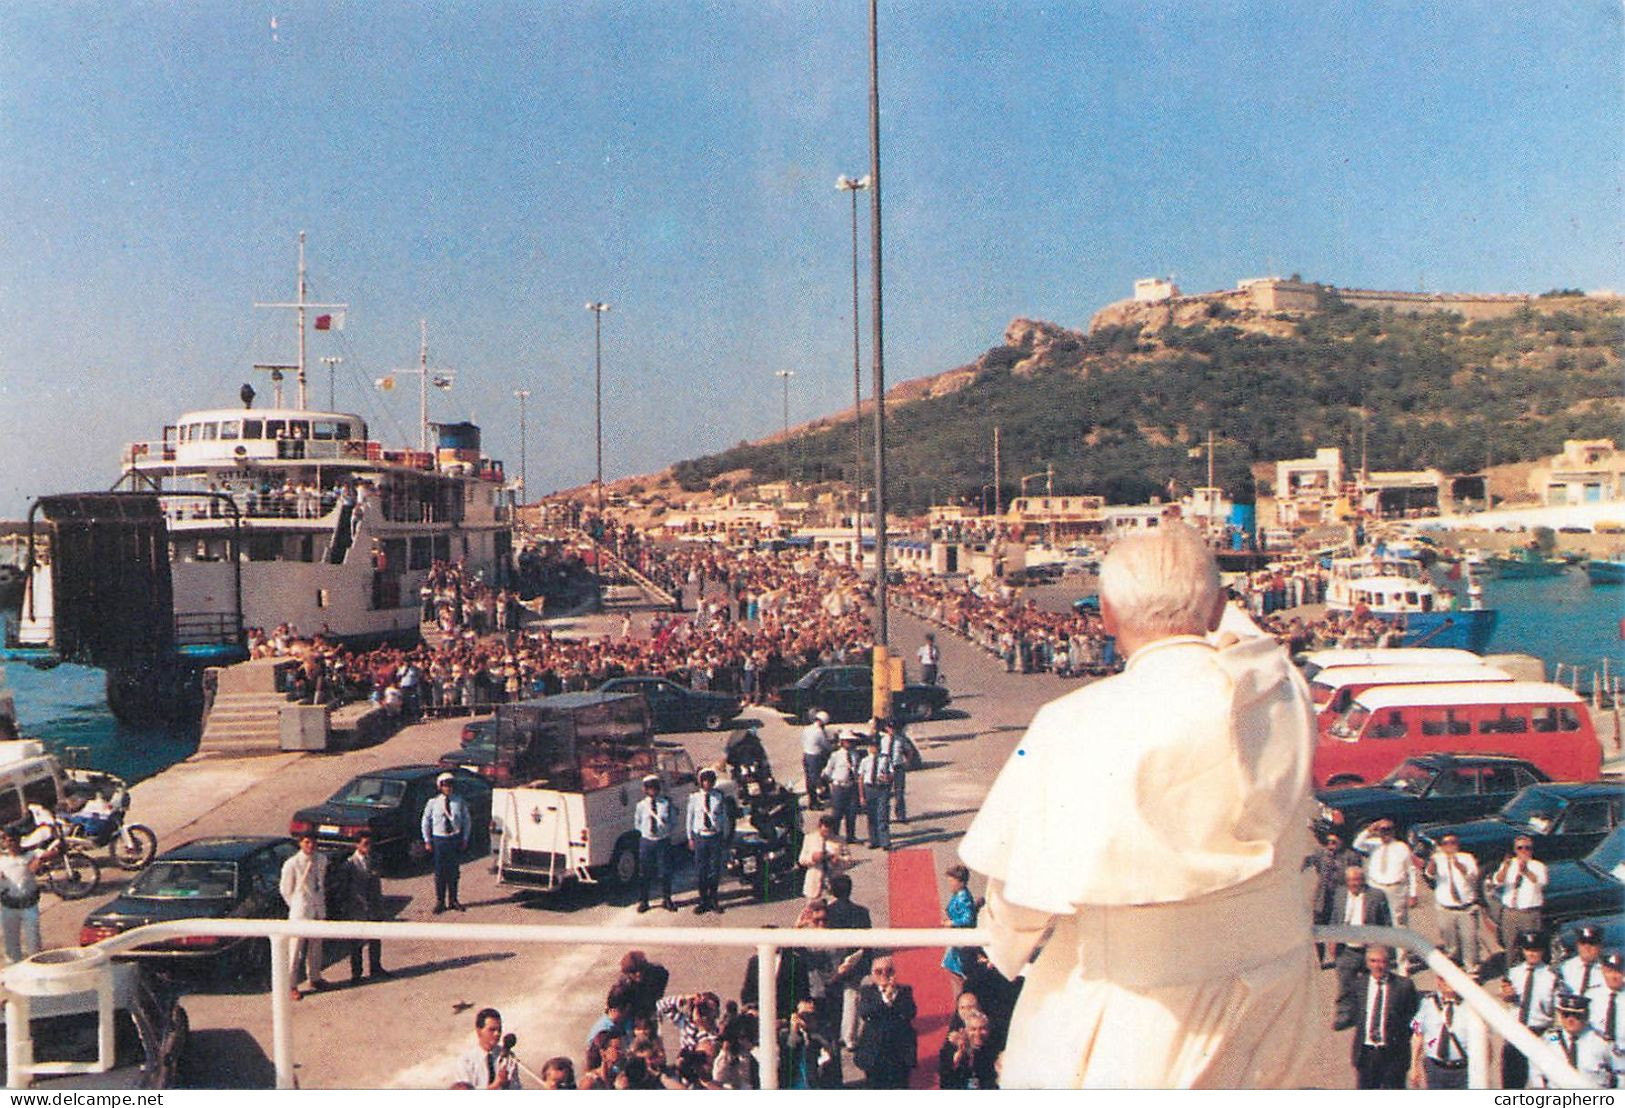 Pope John Paul II Papal Travels Postcard Malta Mellieħa - Popes